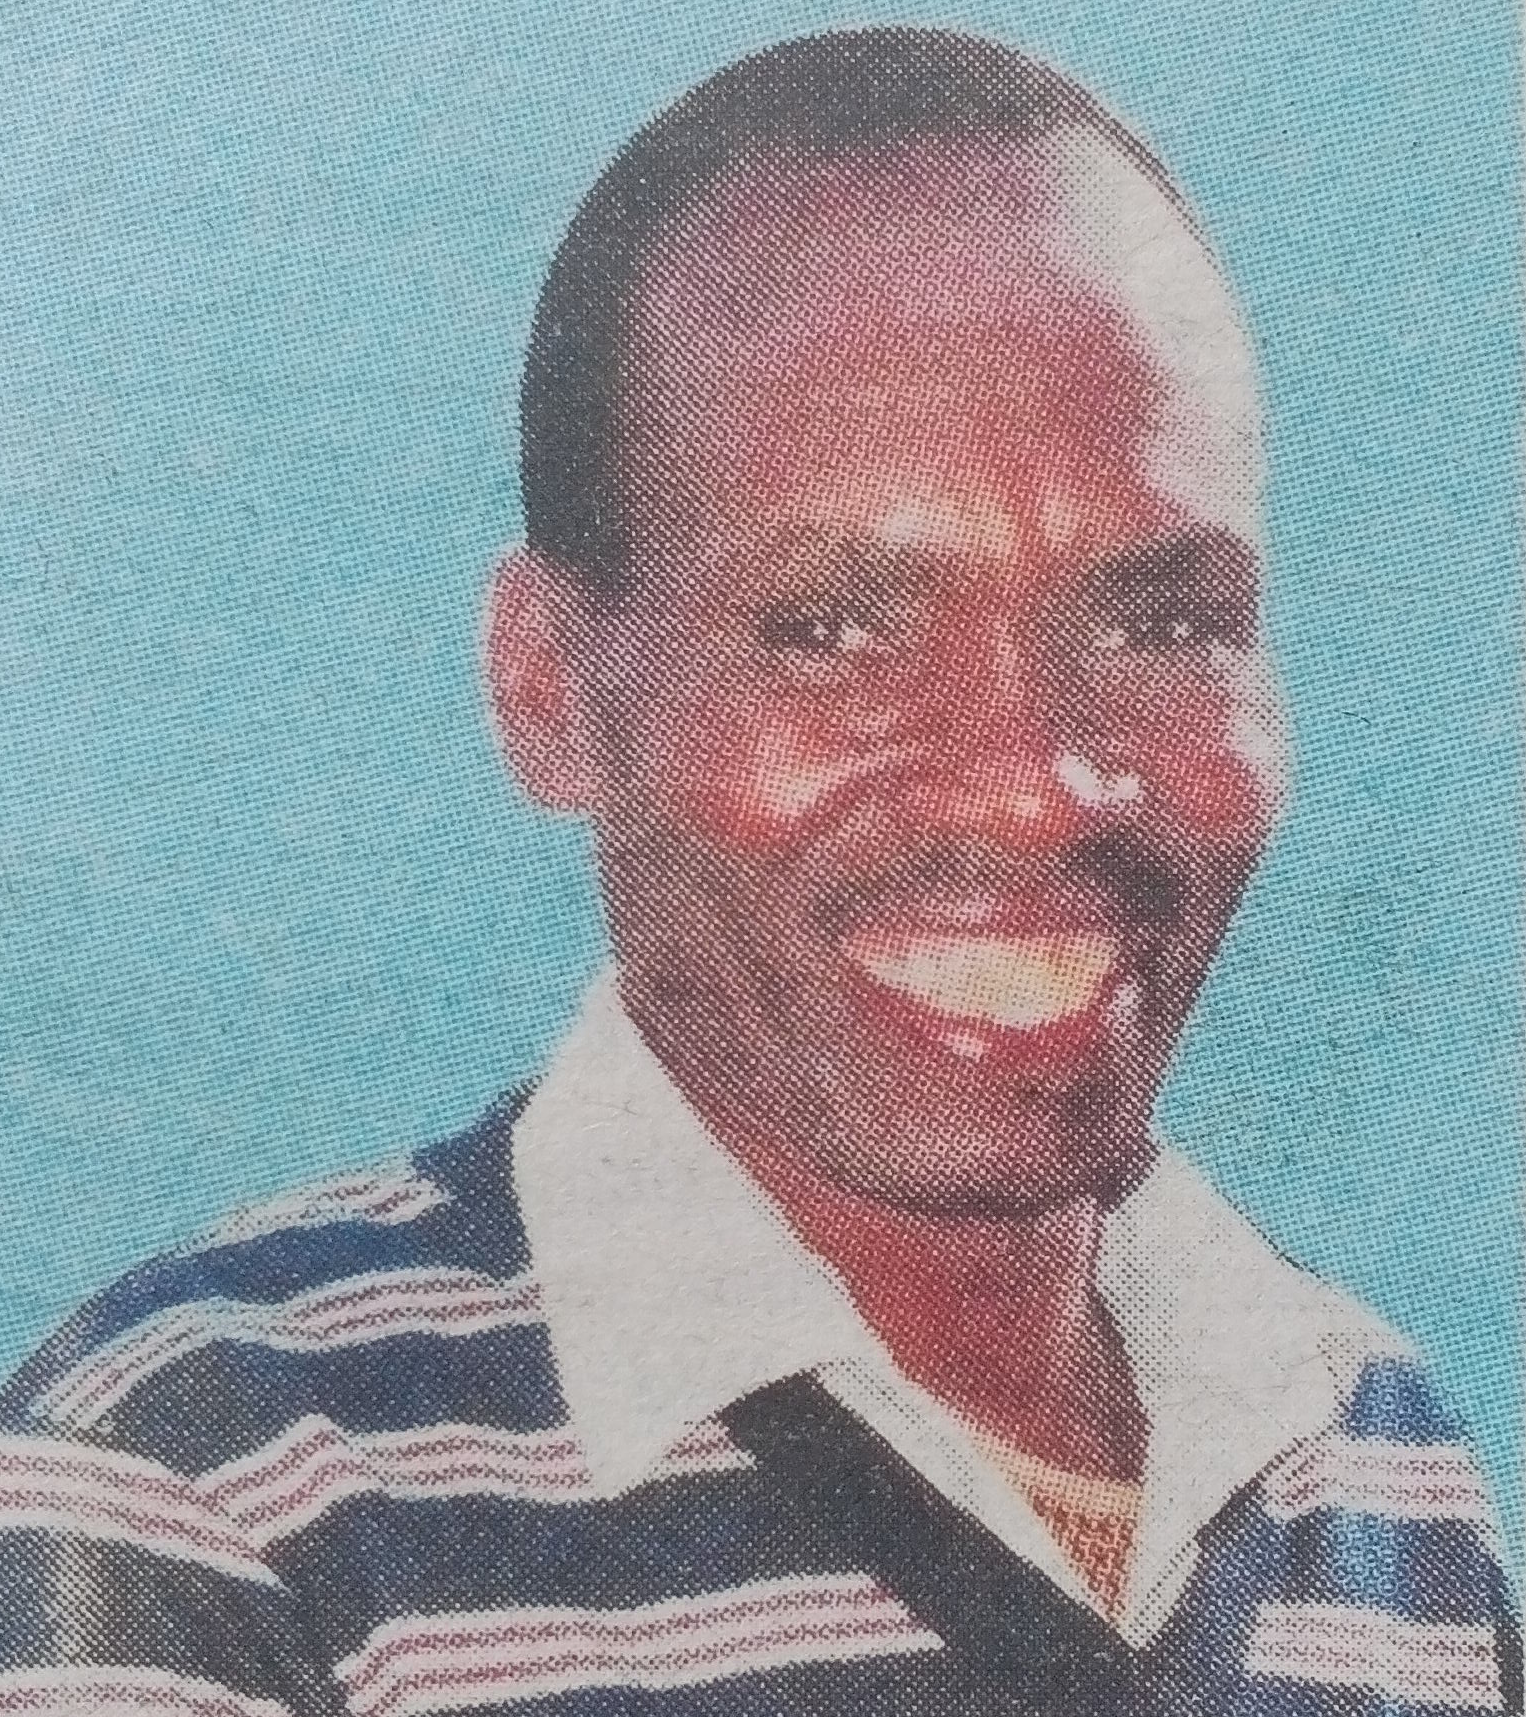 Obituary Image of Lawrence Kimondo Kiiru (Mwalimu)